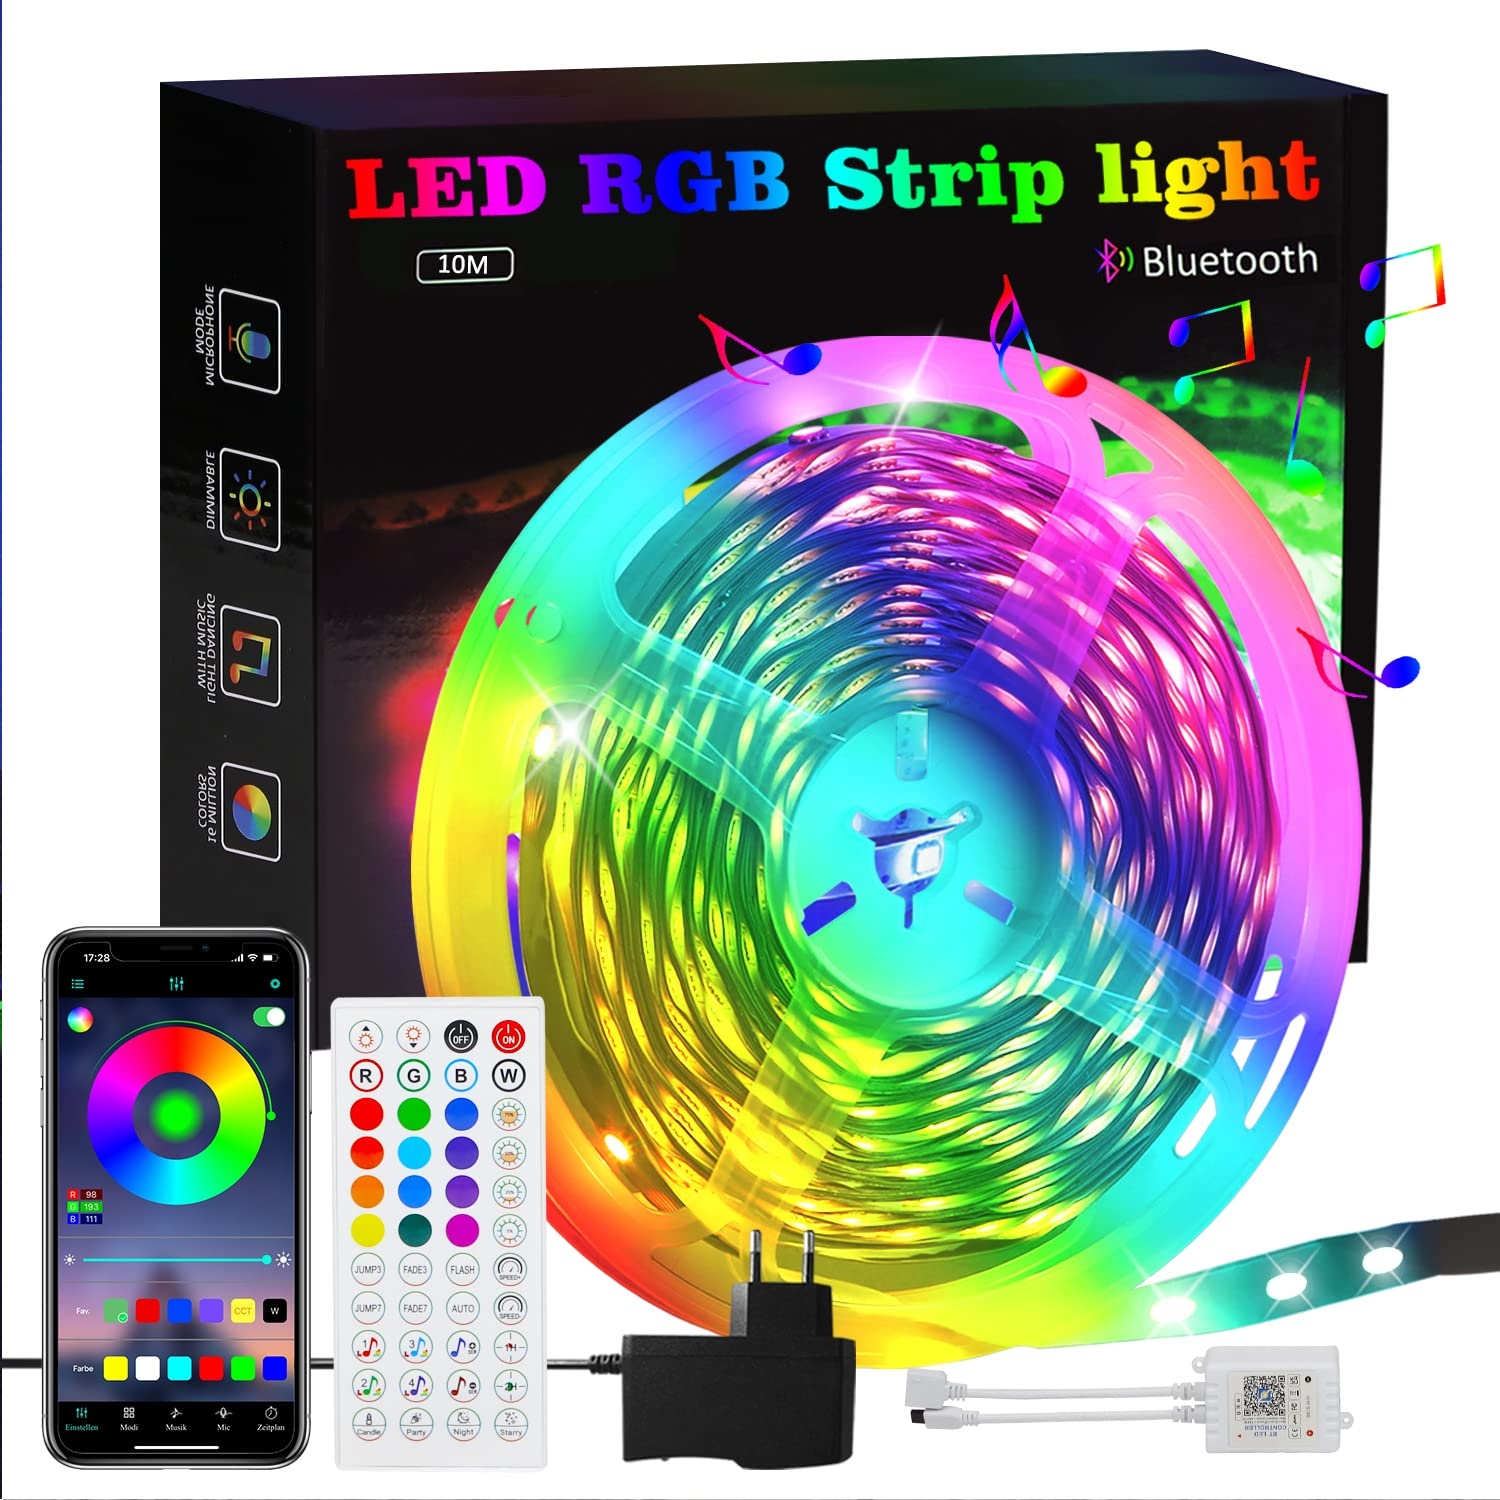 Homefire LED Streifen 10M RGB Strip: 16 Mio Selbstklebend Streifen APP Steuerung Bluetooth Licht Bänder mit Fernbedienung Dimmbar Lichtleiste TV Hintergrundbeleuchtung Musik Sync für